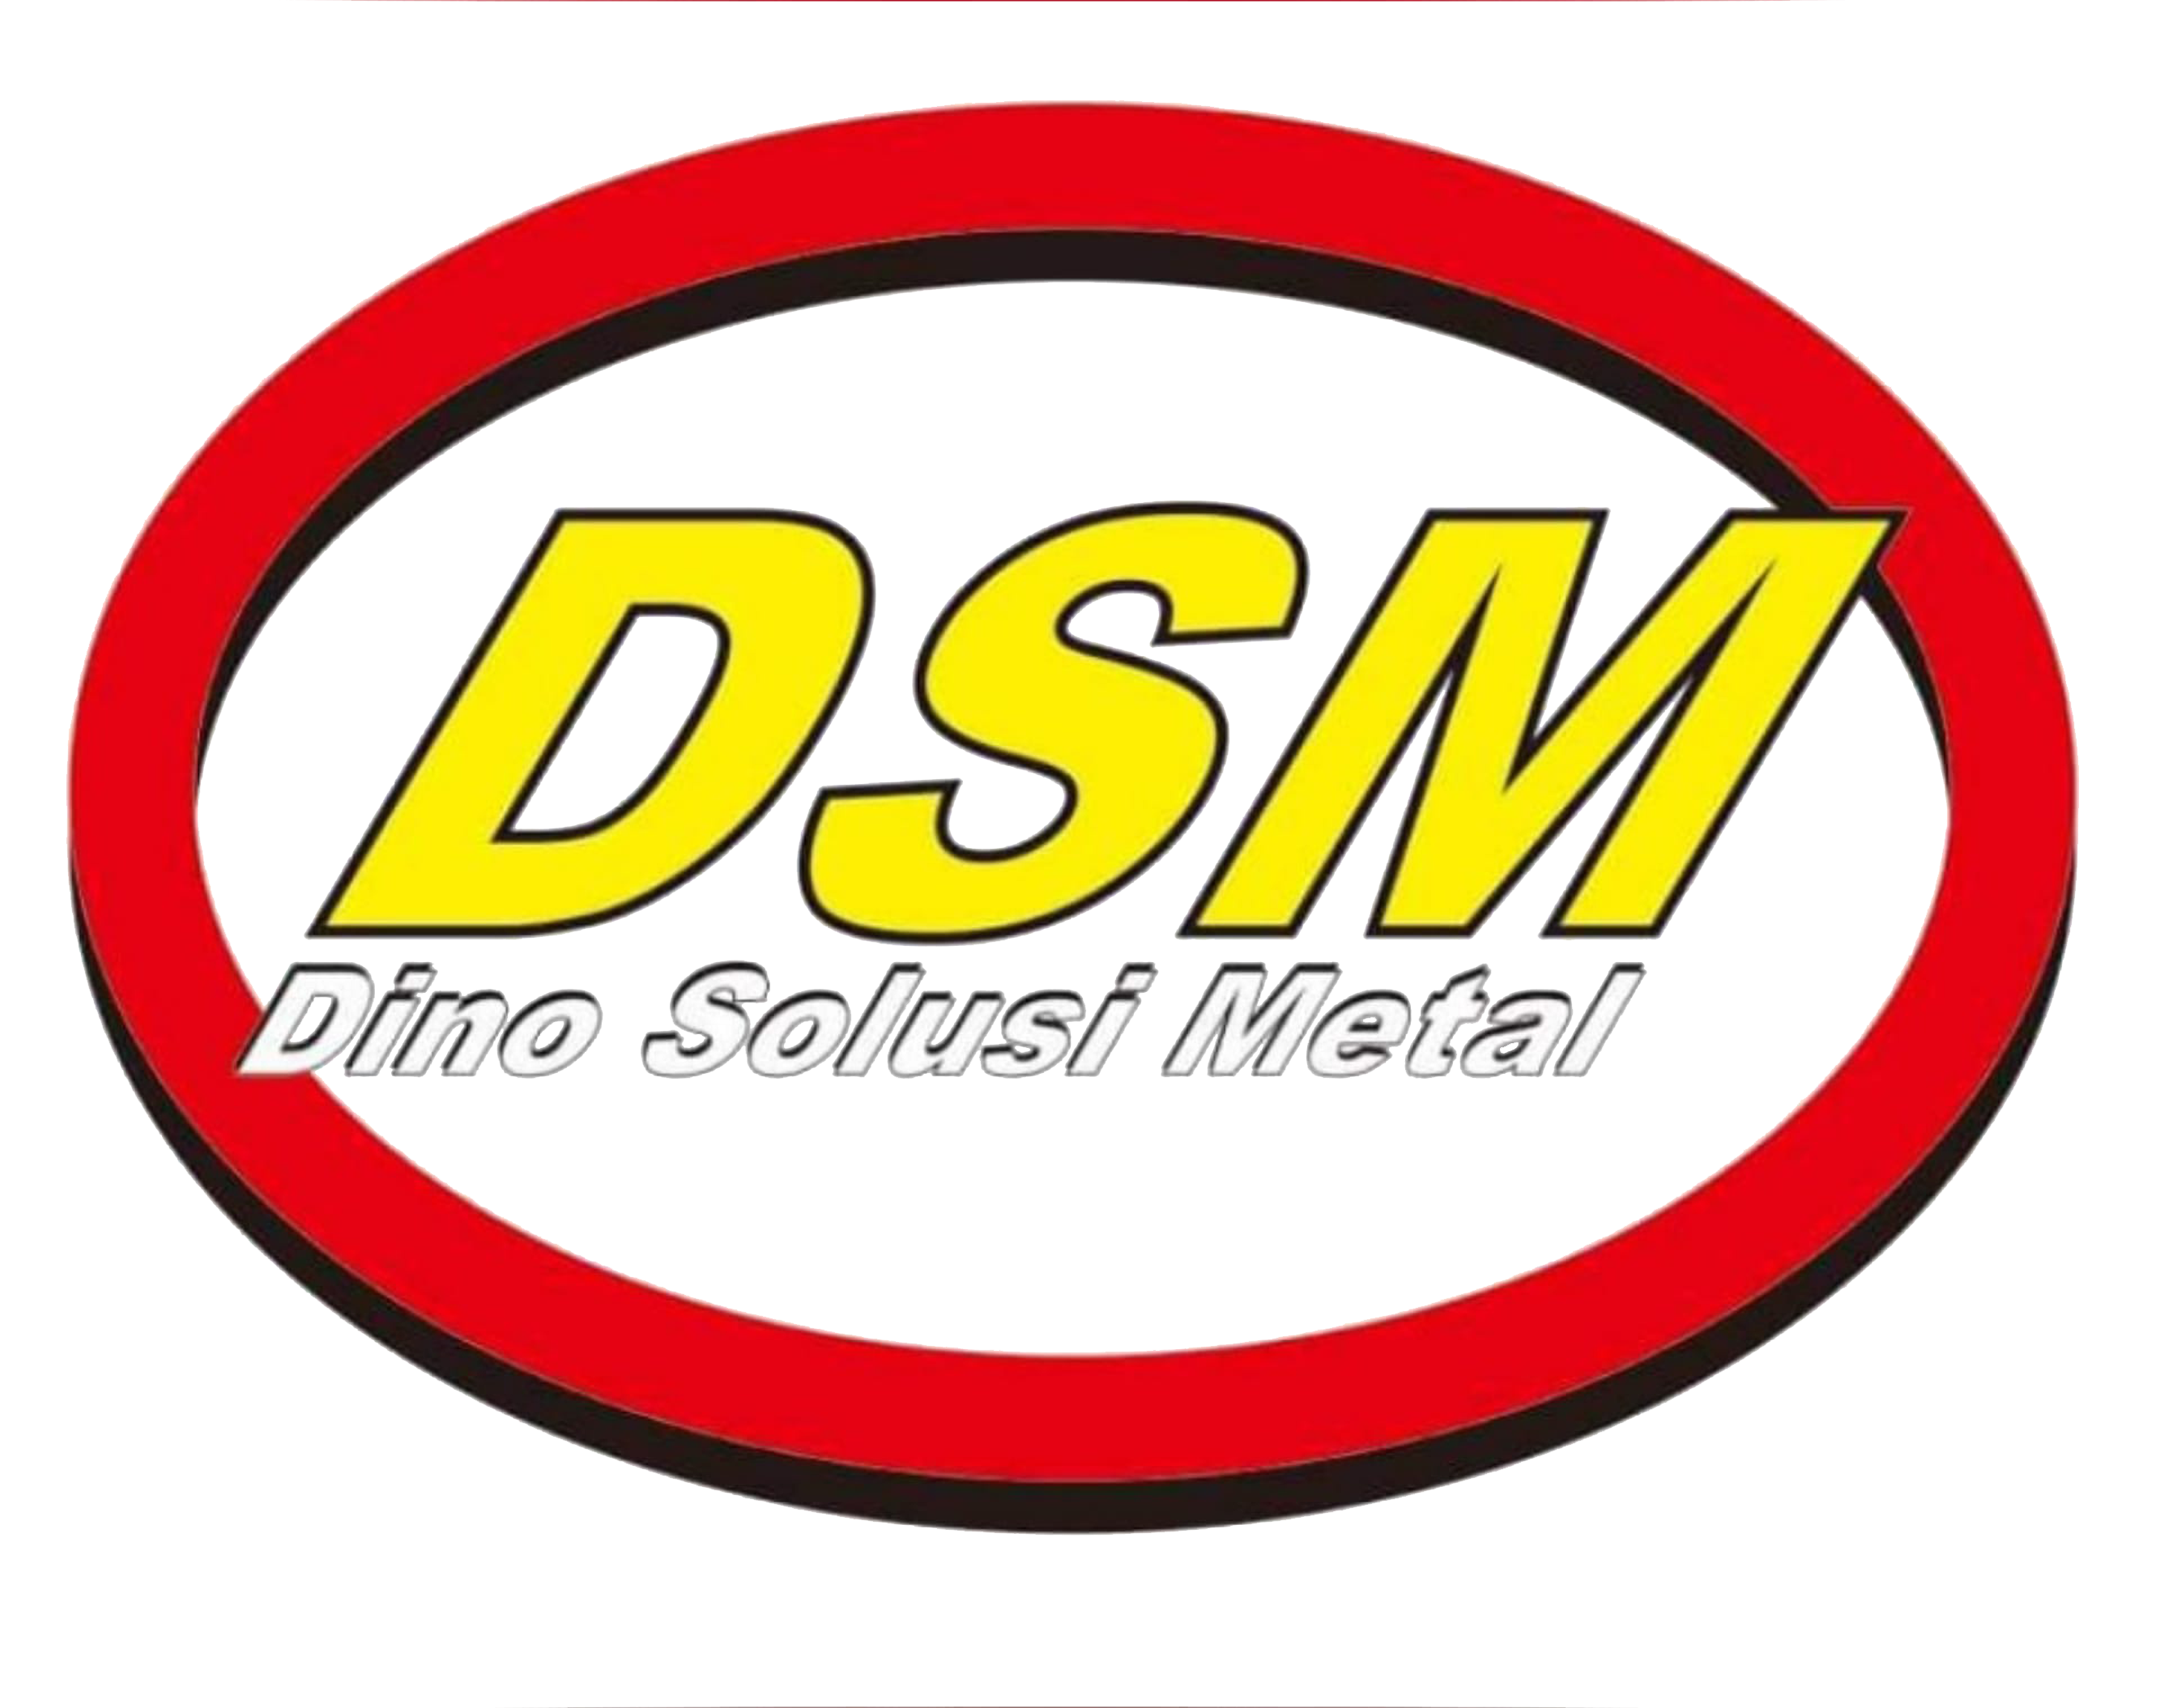 Dino Solusi Metal